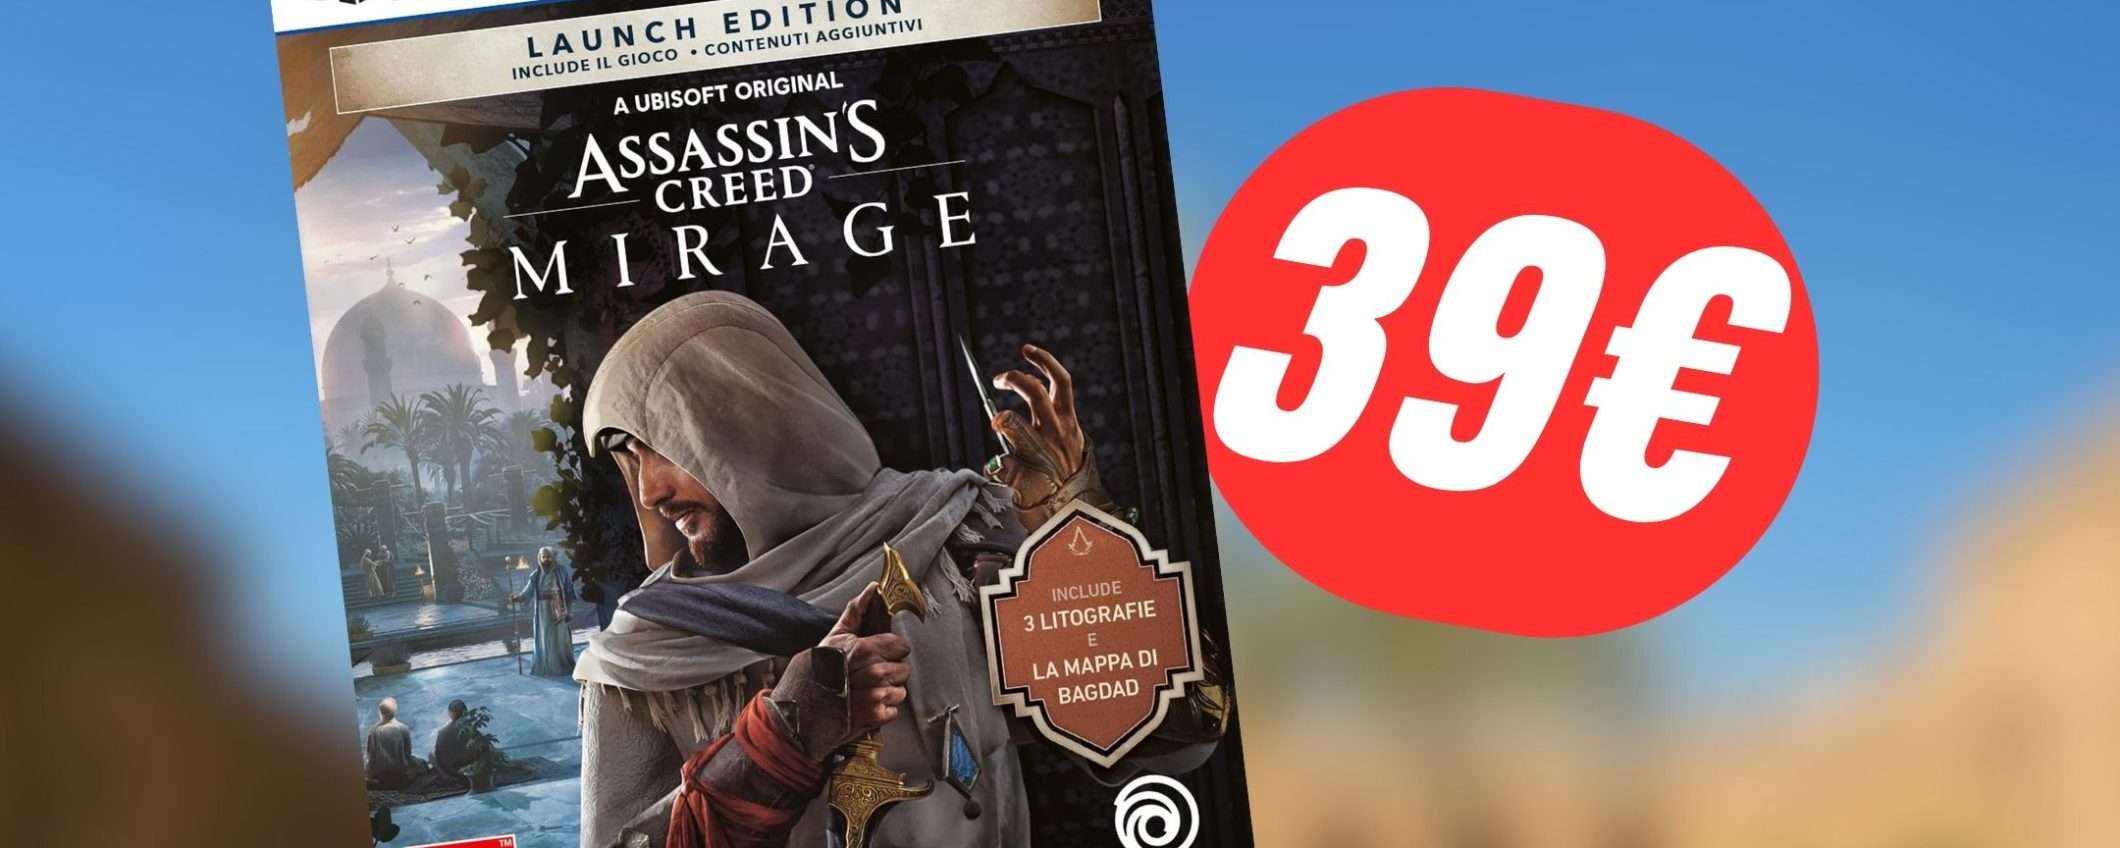 Assassin's Creed Mirage per PS5 è SCONTATO del 20%!